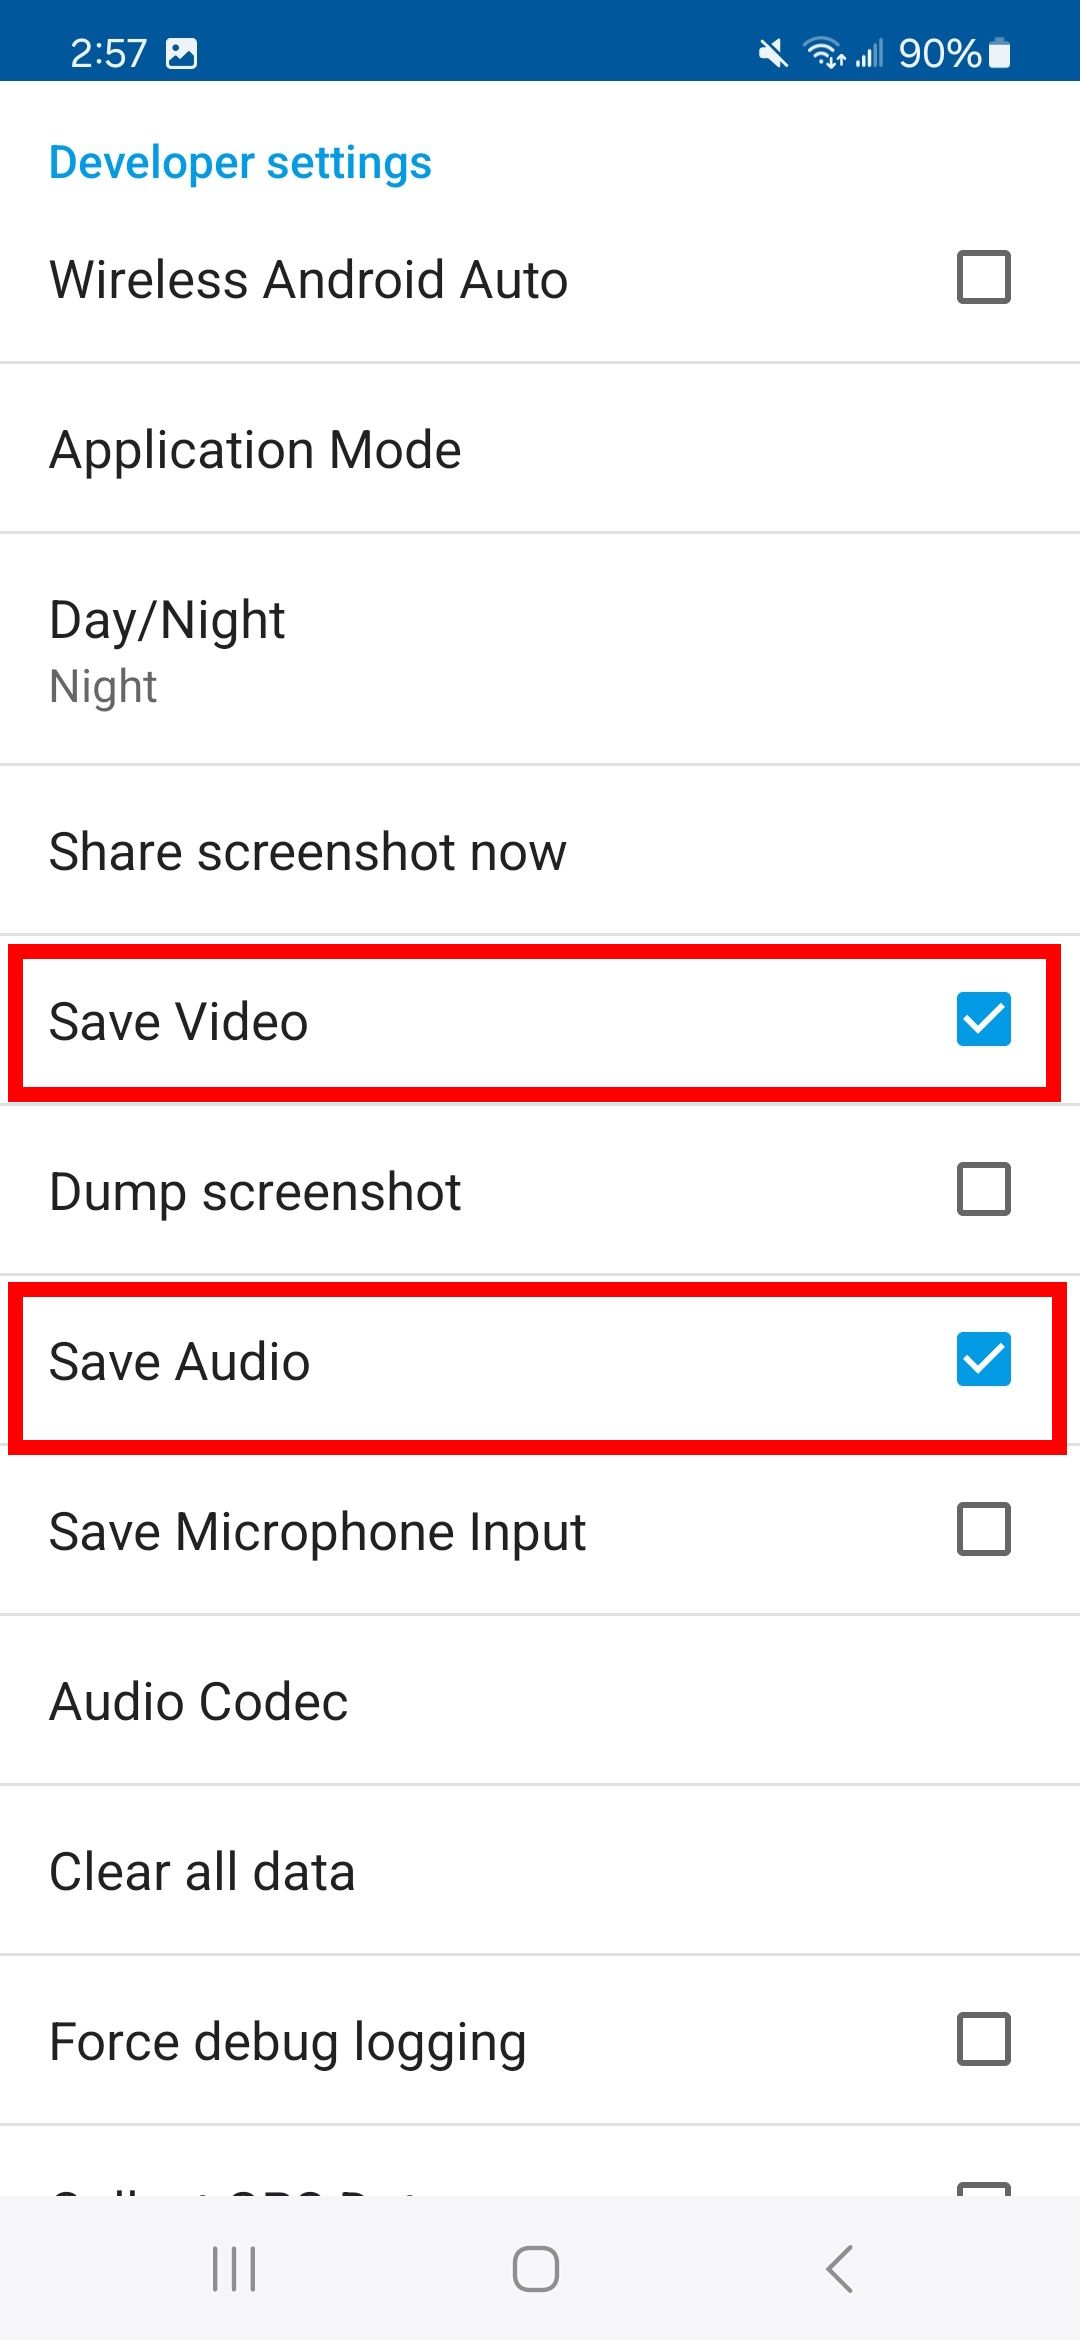 contorno de dois retângulos vermelhos sobre as opções de salvar vídeo e salvar áudio nas configurações do desenvolvedor